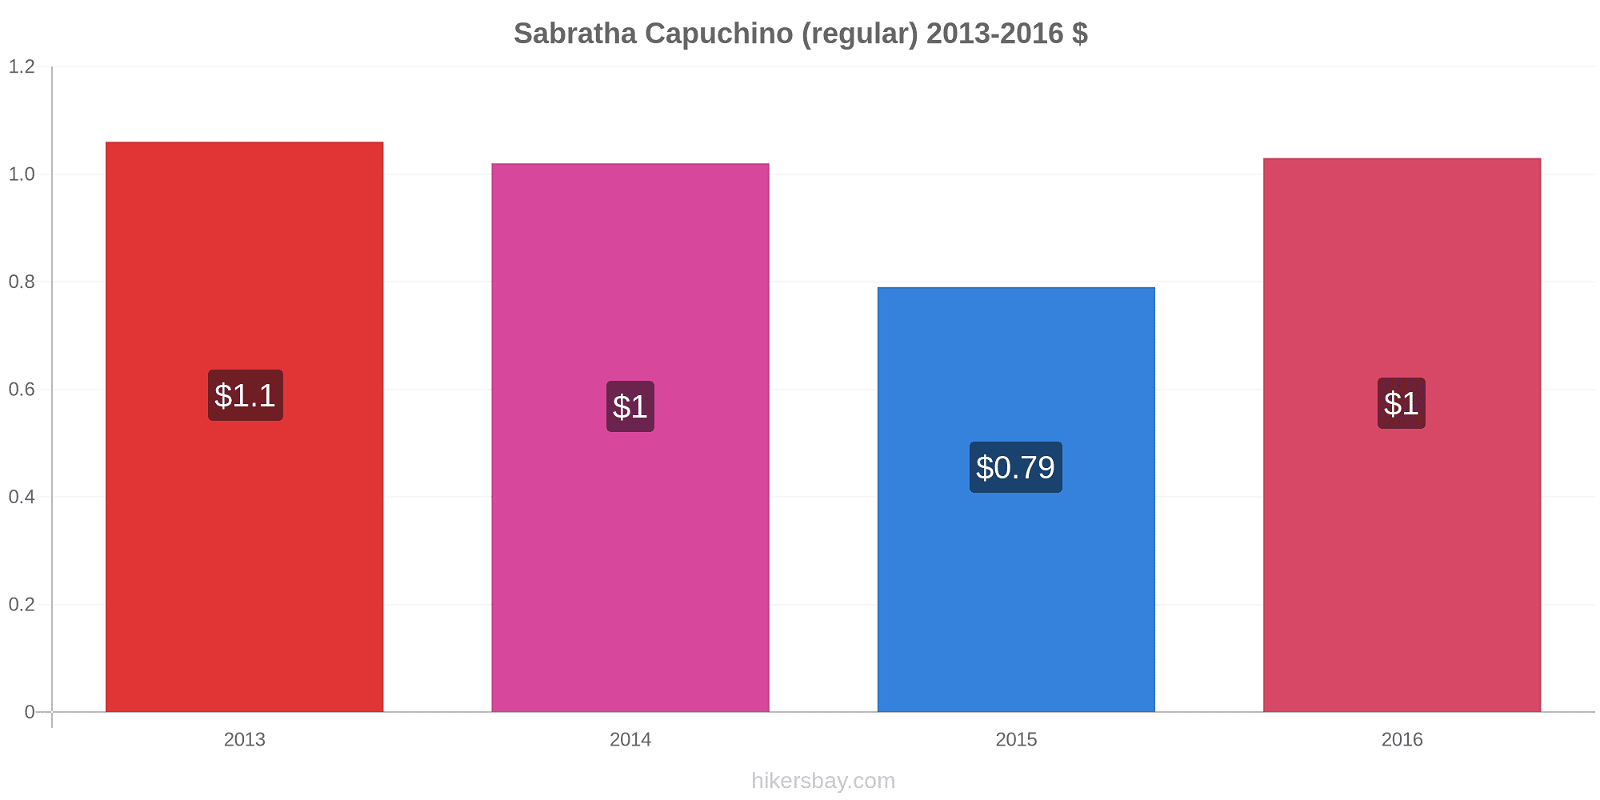 Sabratha cambios de precios Capuchino (regular) hikersbay.com